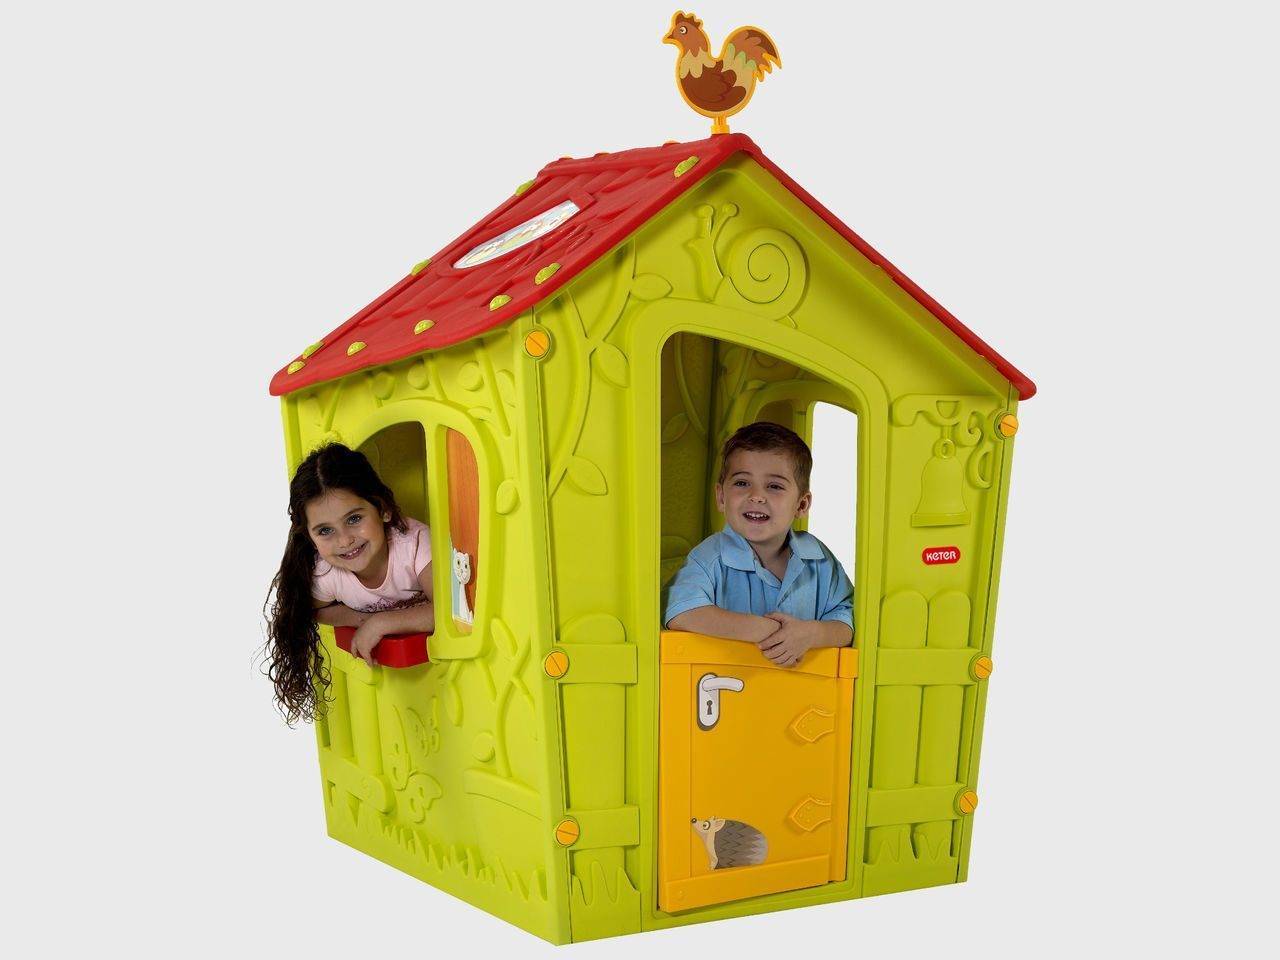 Детские игровые домики для дачи и дома (пластиковые, деревянные, надувные)